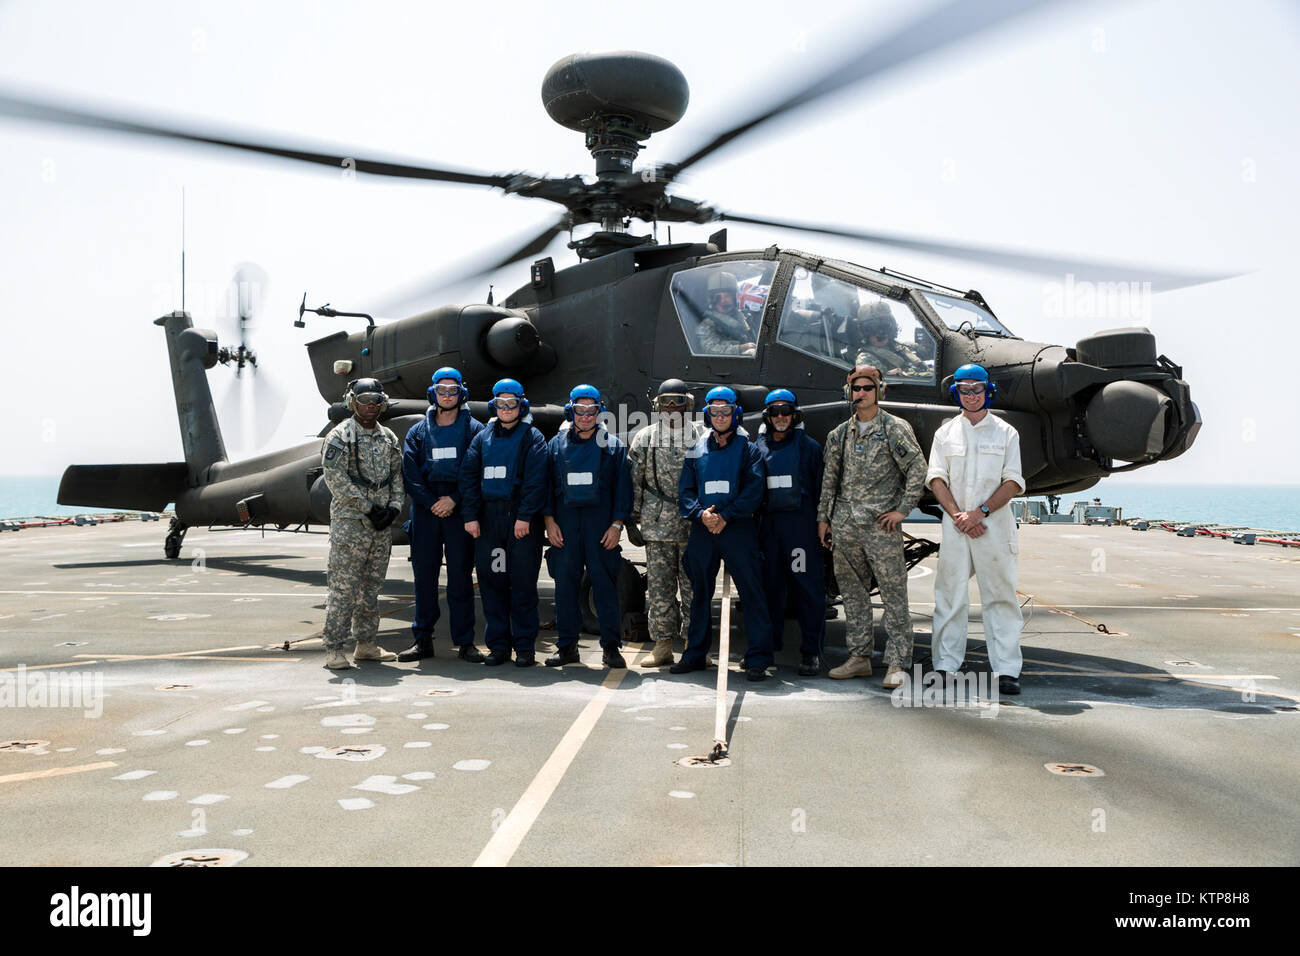 La tripulación de cubierta de la RFA Cardigan Bay, auxiliar de la flota Real, en el Reino Unido, la Royal Navy, párese frente a un Apache AH-64 volados por los pilotos del 3º Batallón, 159ª Batallón de reconocimiento de ataque, la 42ª Brigada de Aviación de Combate (Cabina) del Ejército de Estados Unidos, el 10 de junio de 2014, en algún lugar en el Golfo Arábigo. El Apache pilotos entrenados en la cubierta de los desembarques y funcionó como Scouts para el Cardigan Bay durante el ejercicio Kopis espartano, un intercambio entre el Cardigan Bay y tanto el Black Hawk y Apache AH-64 elementos de la cabina, 42 de la Guardia Nacional del Ejército de Nueva York. Spartan Kopis era la primera vez que American Apaches trabajó w Foto de stock